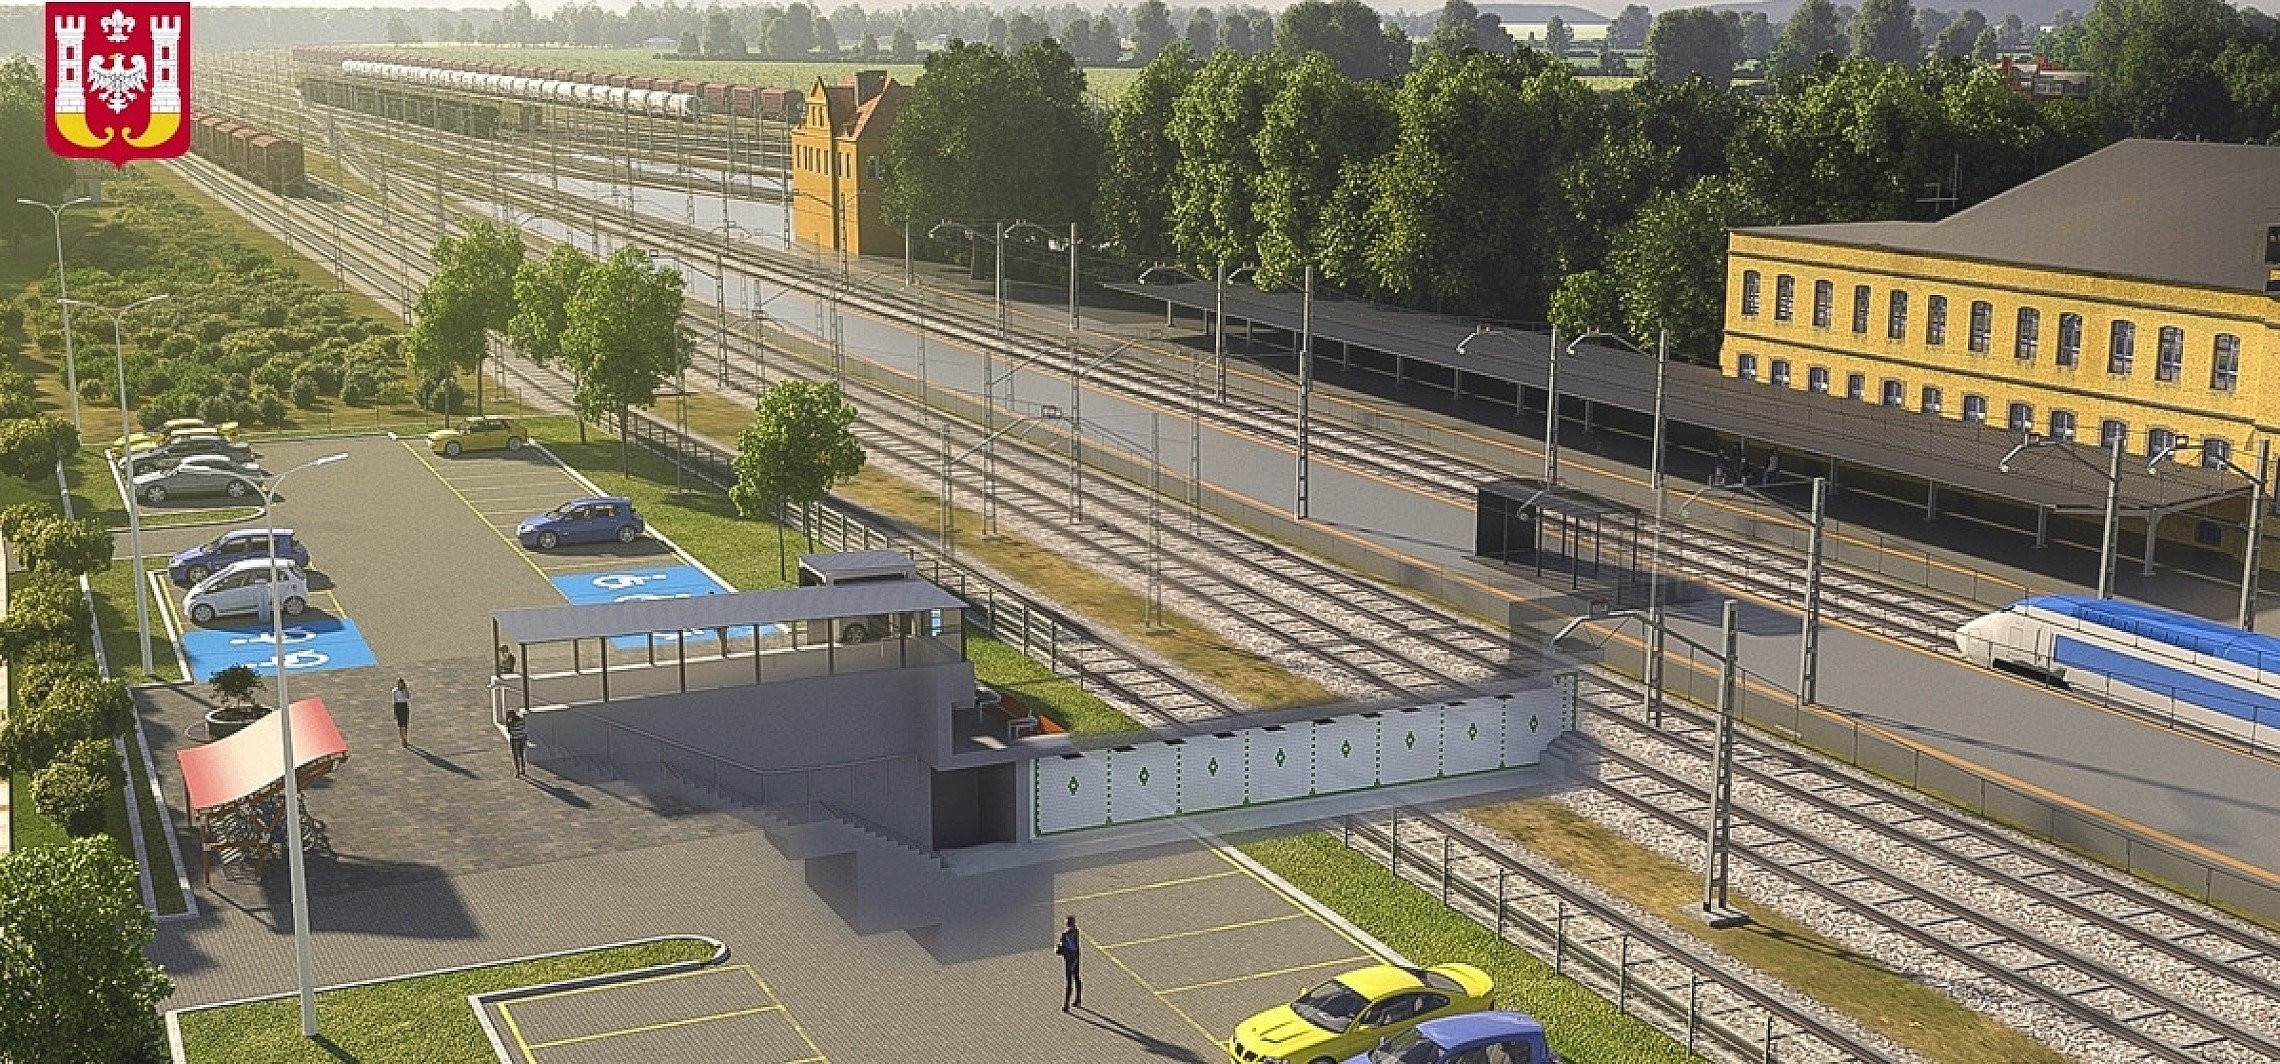 Inowrocław - Wkrótce ruszy budowa tunelu do dworca PKP